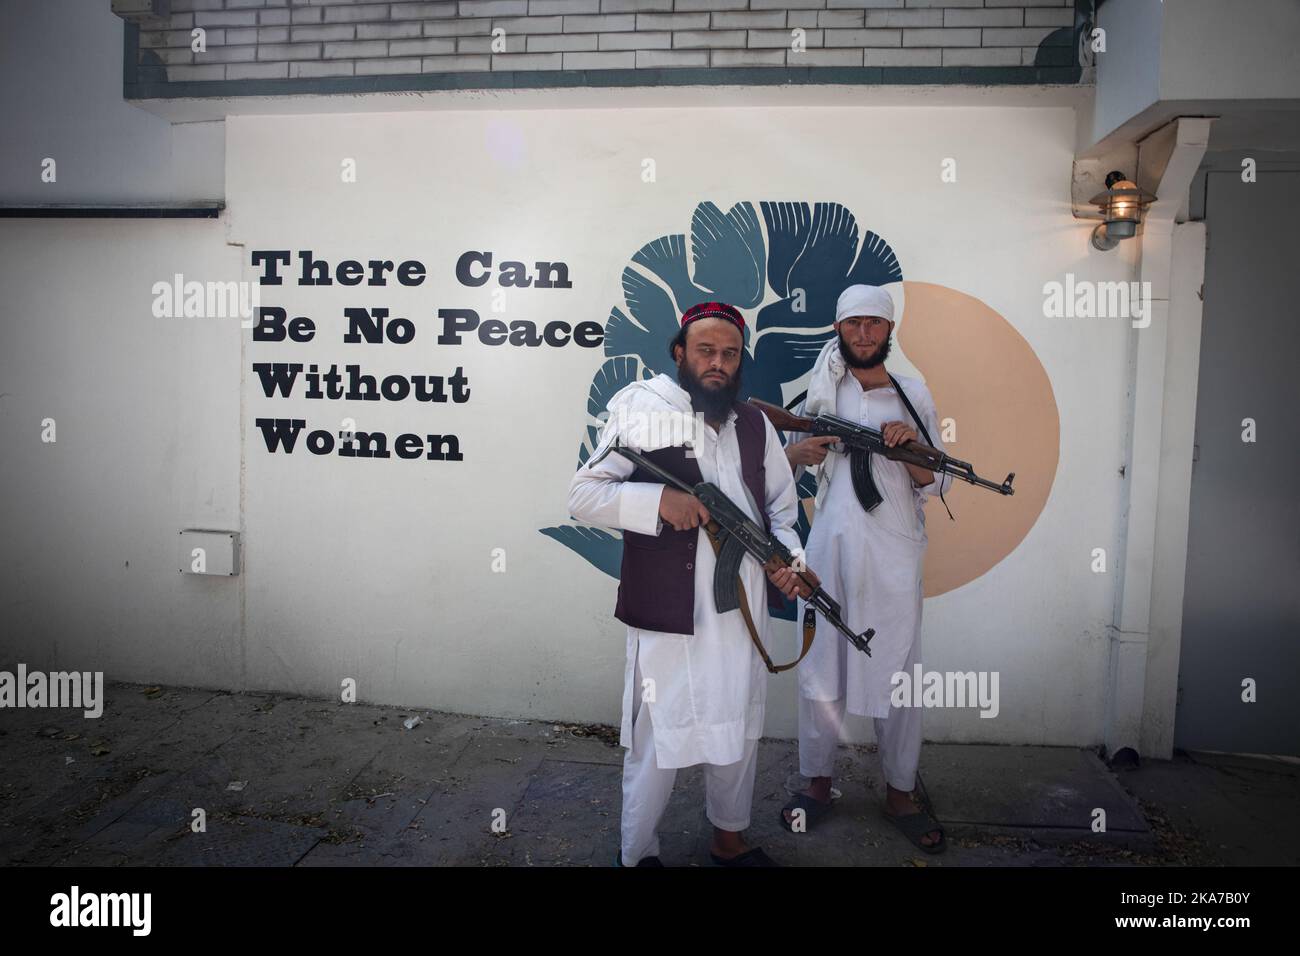 20210906 - Kaboul, Afghanistan le message sur le mur est incompatible avec le règne des talibans la dernière fois qu'ils étaient au pouvoir. Ambassade de Norvège à Kaboul, Afghanistan 56 combattants talibans vivent à l'ambassade de Norvège à Kaboul. Du vin, des magazines et des CD ont été recueillis et seront brûlés par les talibans. Photo: Afshin Ismaeli / Aftenposten / NTB Banque D'Images